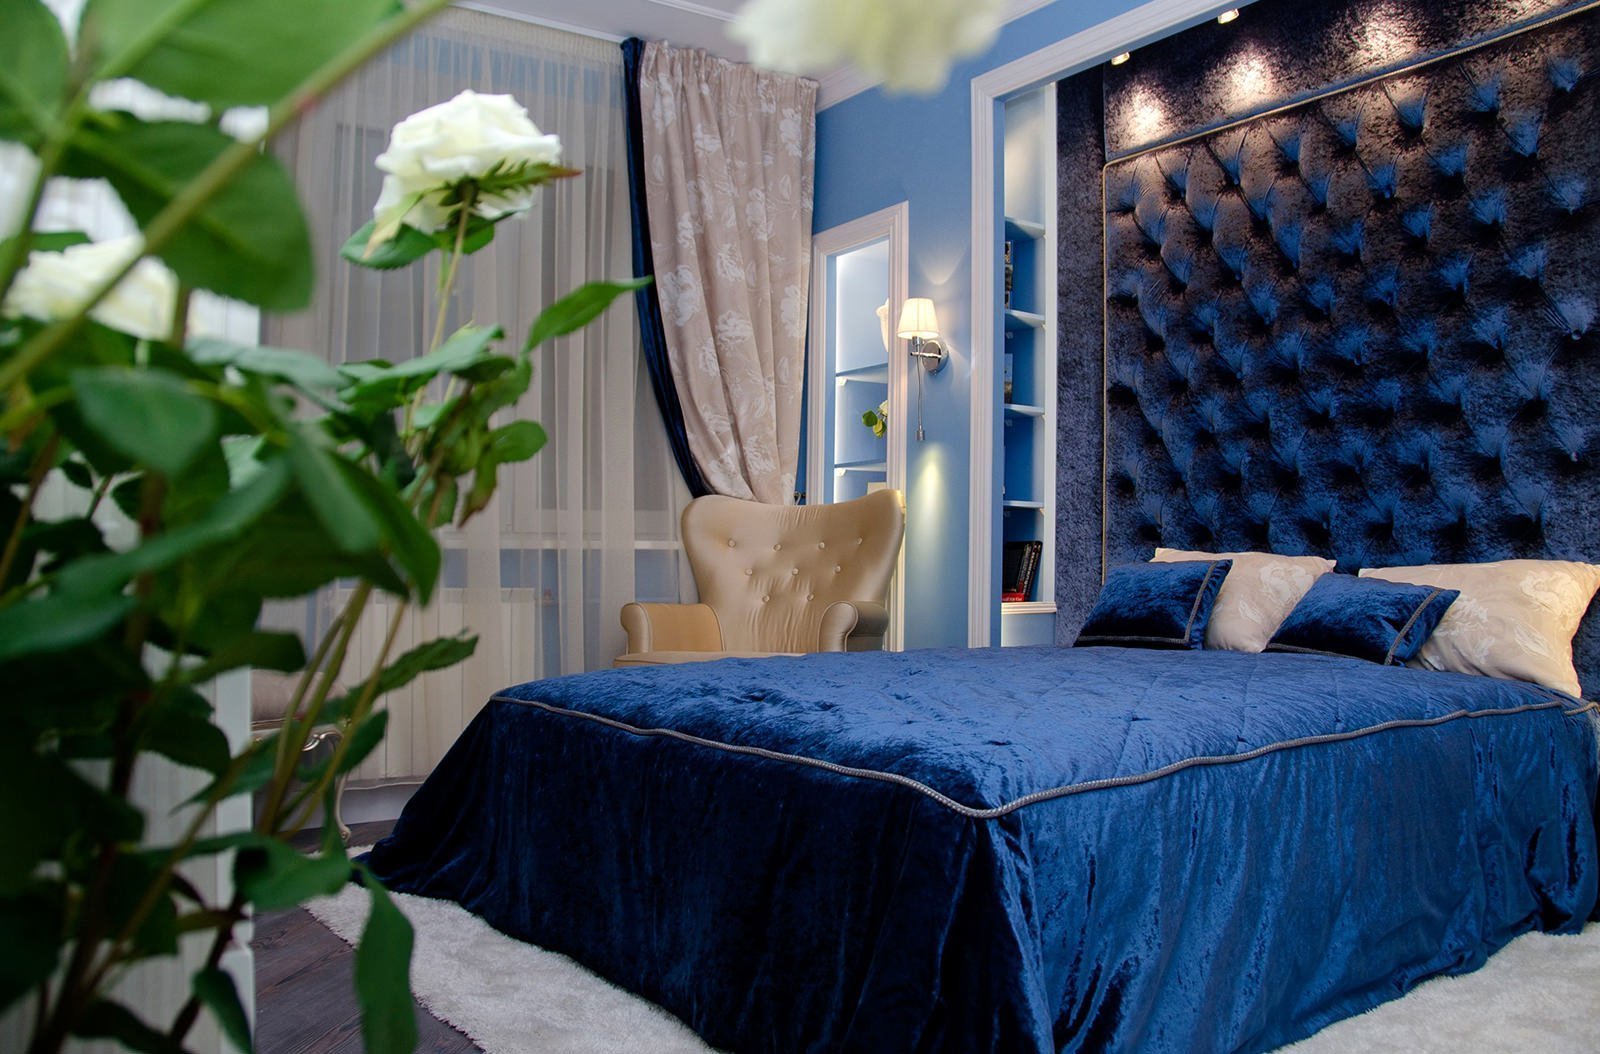 غرفة نوم في صورة التصميم الأزرق